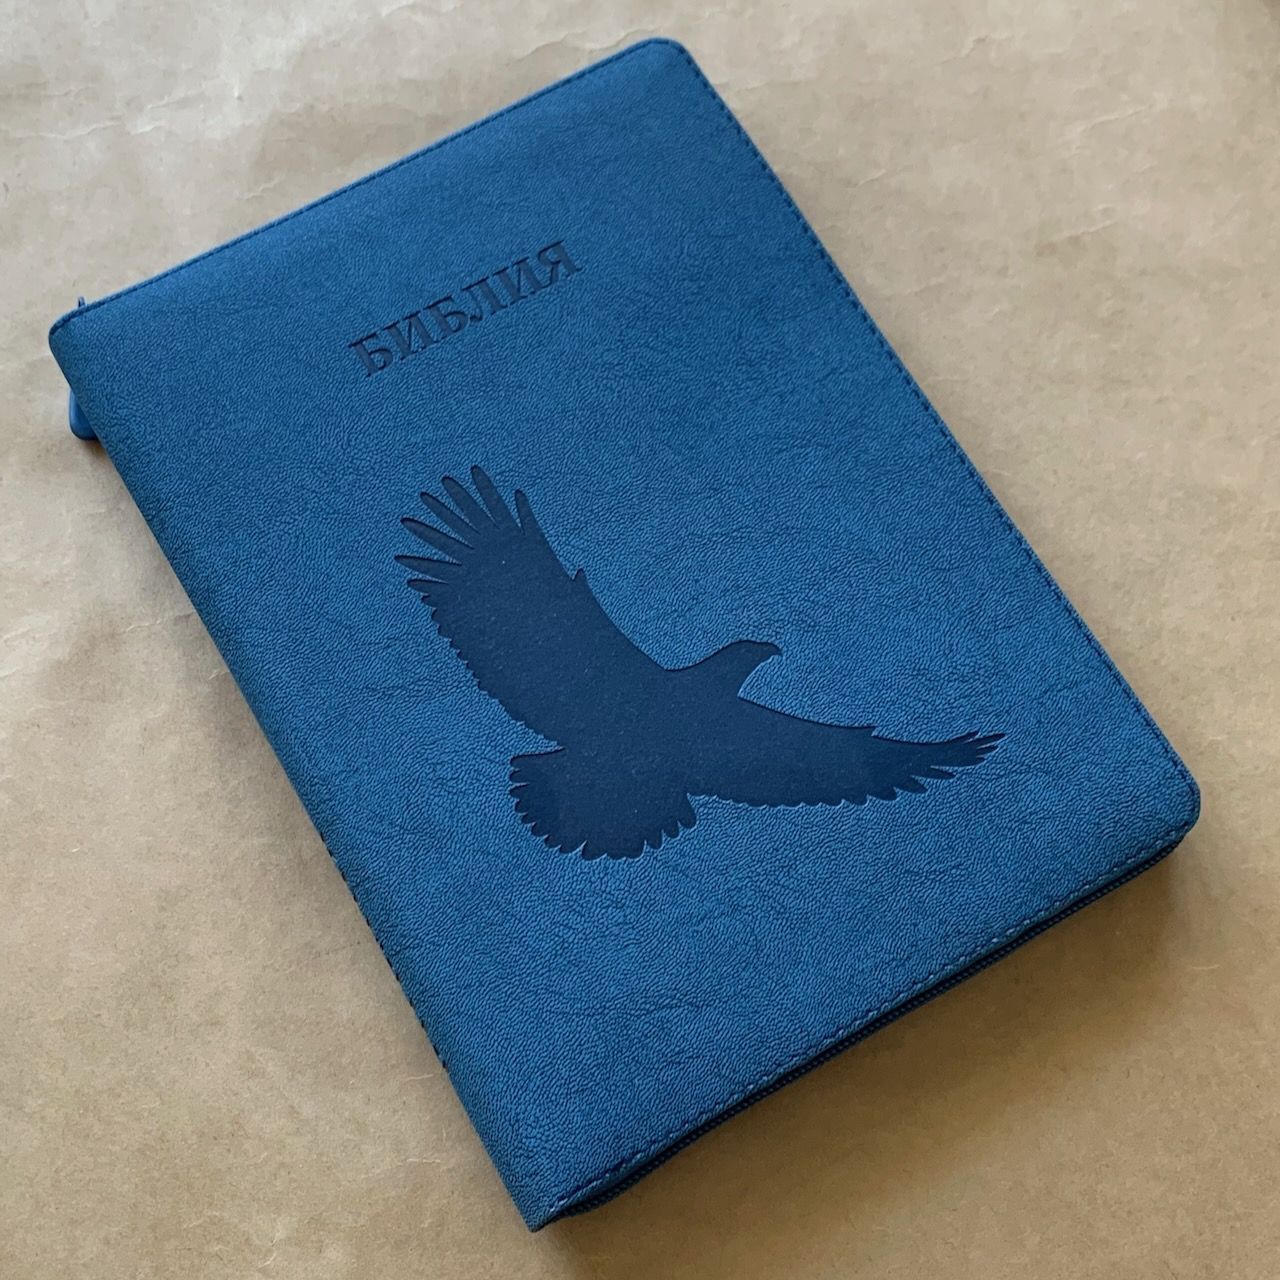 Библия 076z код E2, дизайн "орел", переплет из искусственной кожи на молнии, цвет синий мрамор матовый, размер 180x243 мм